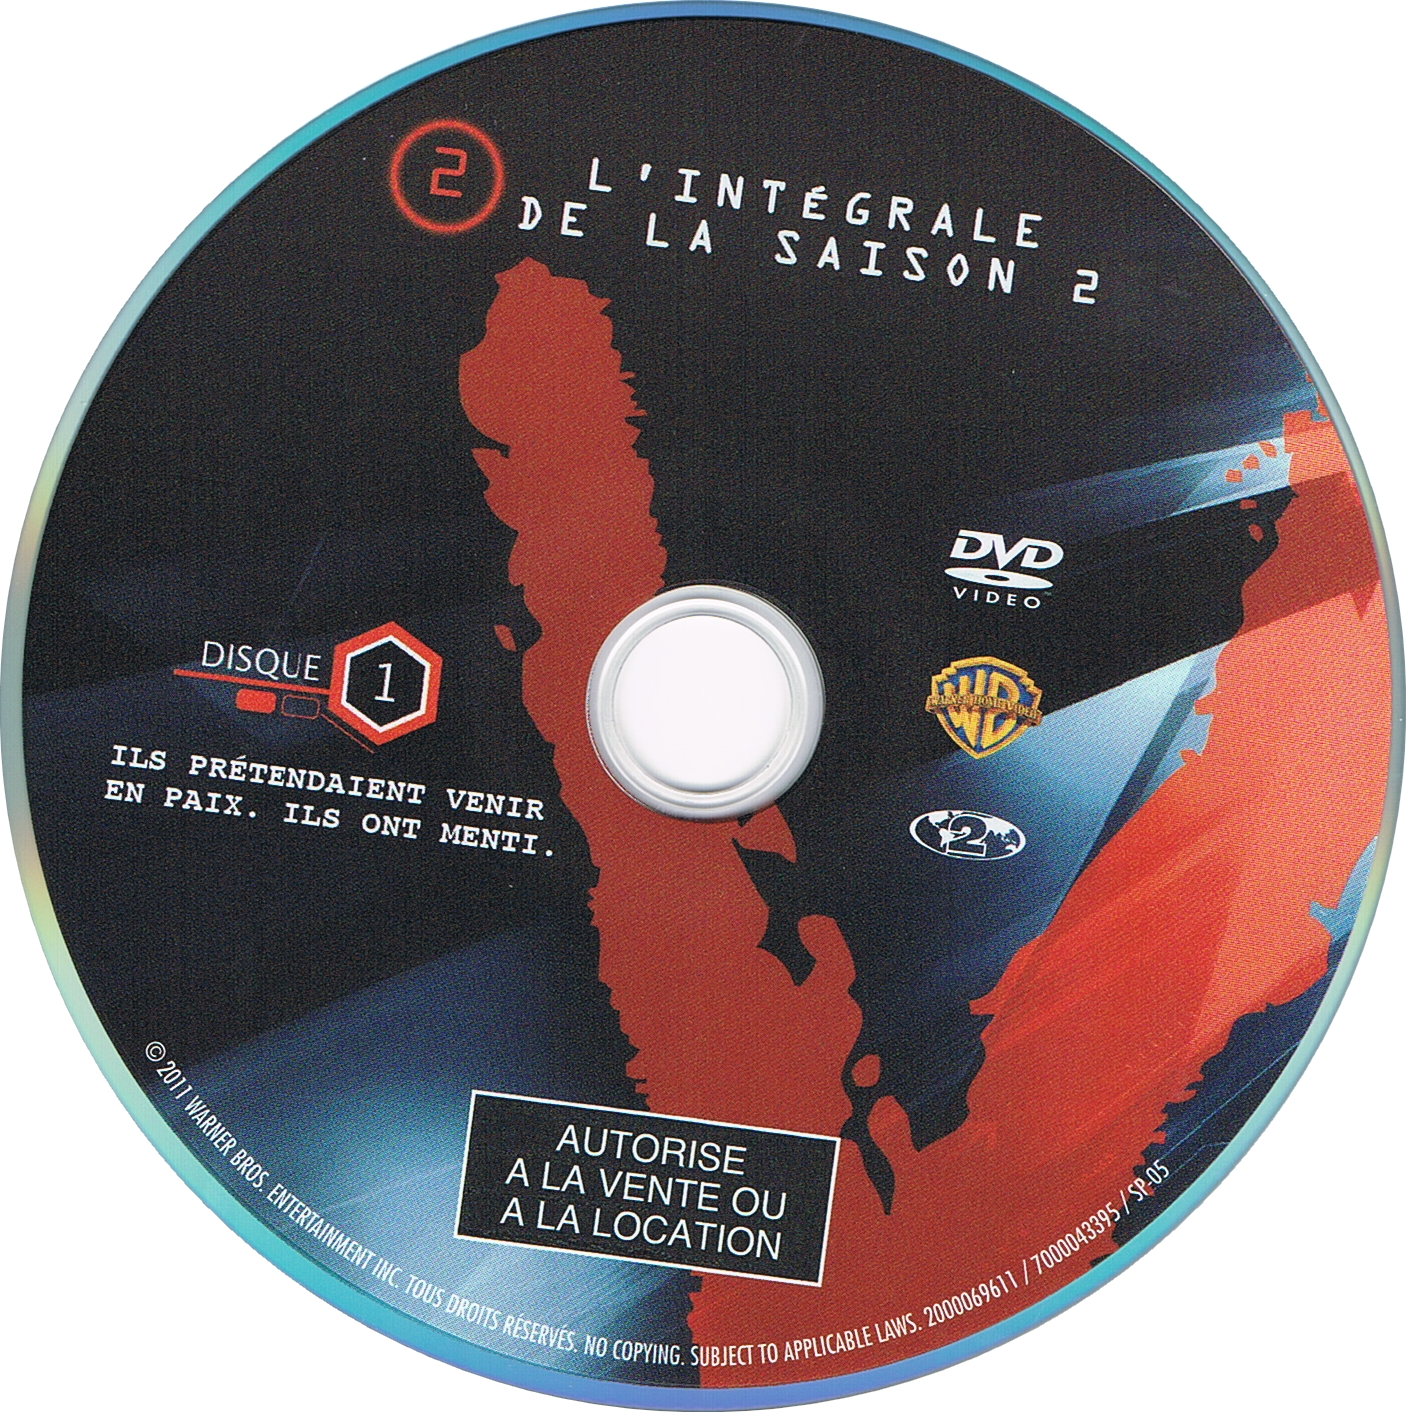 V (2009) Saison 2 DVD 1